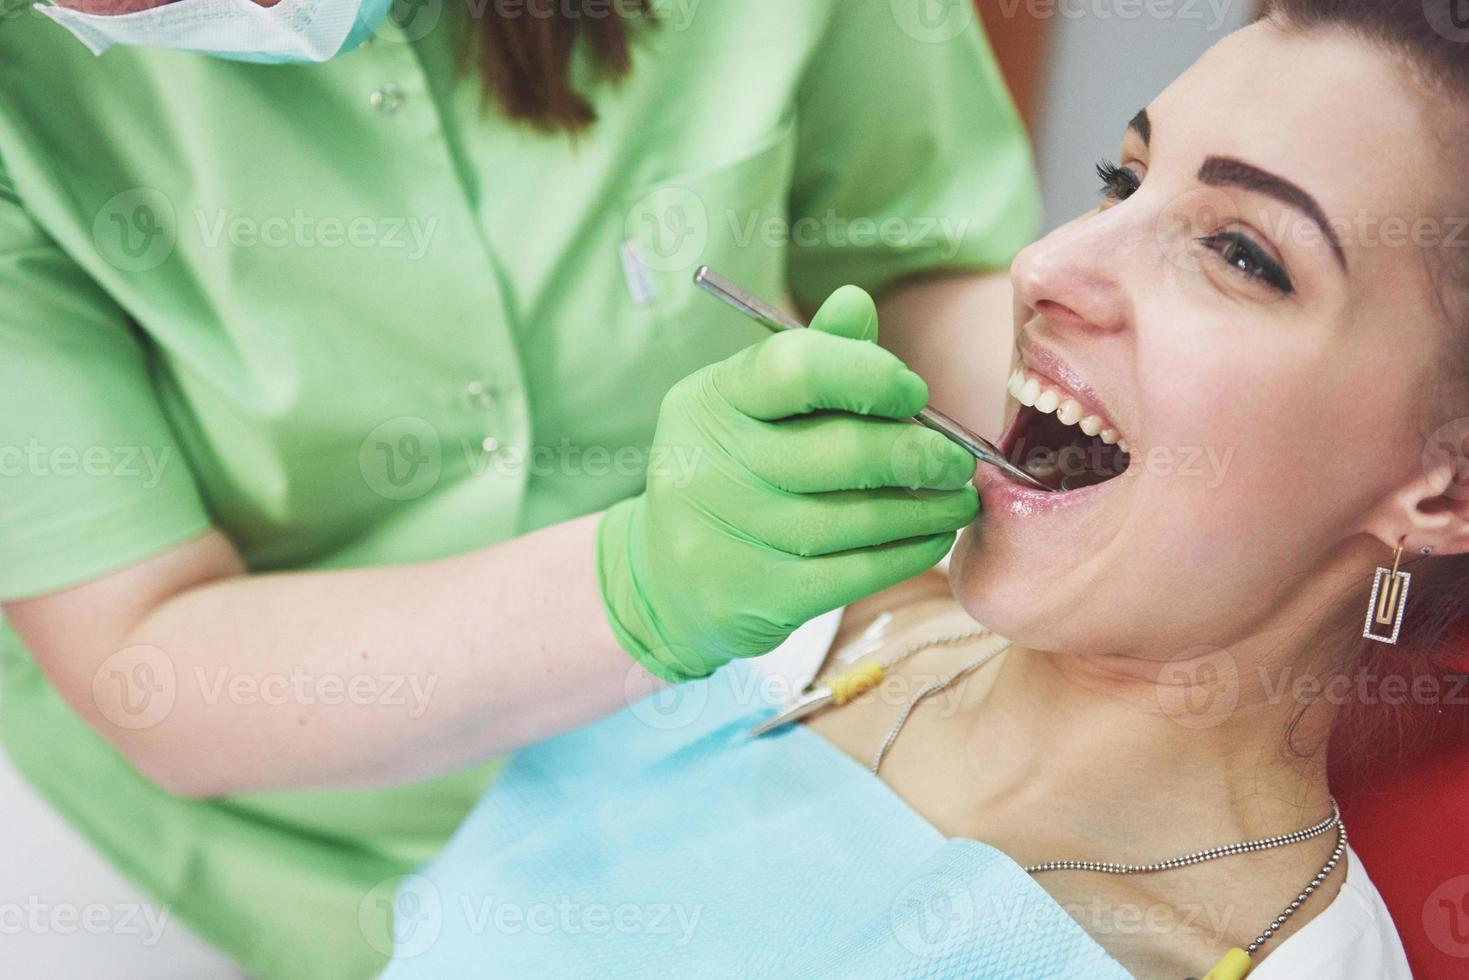 dentiste guérissant une patiente en stomatologie. concept de prévention précoce et d'hygiène bucco-dentaire photo